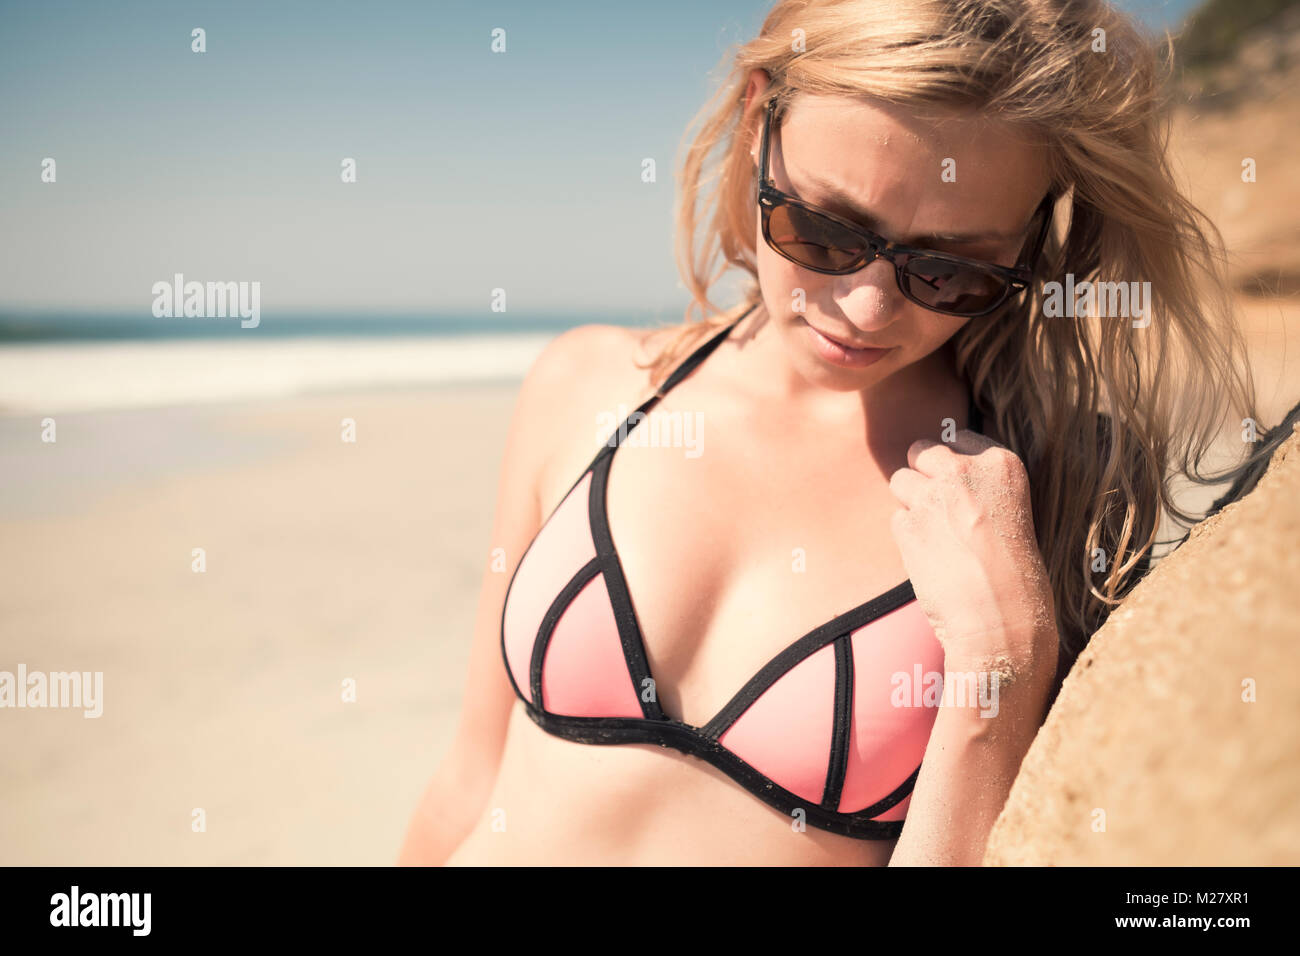 Bis Cose Porträt der jungen kaukasischen Frau im Bikini, mit Sonnenbrille, lehnte sich gegen einen Felsen am Strand. Stockfoto